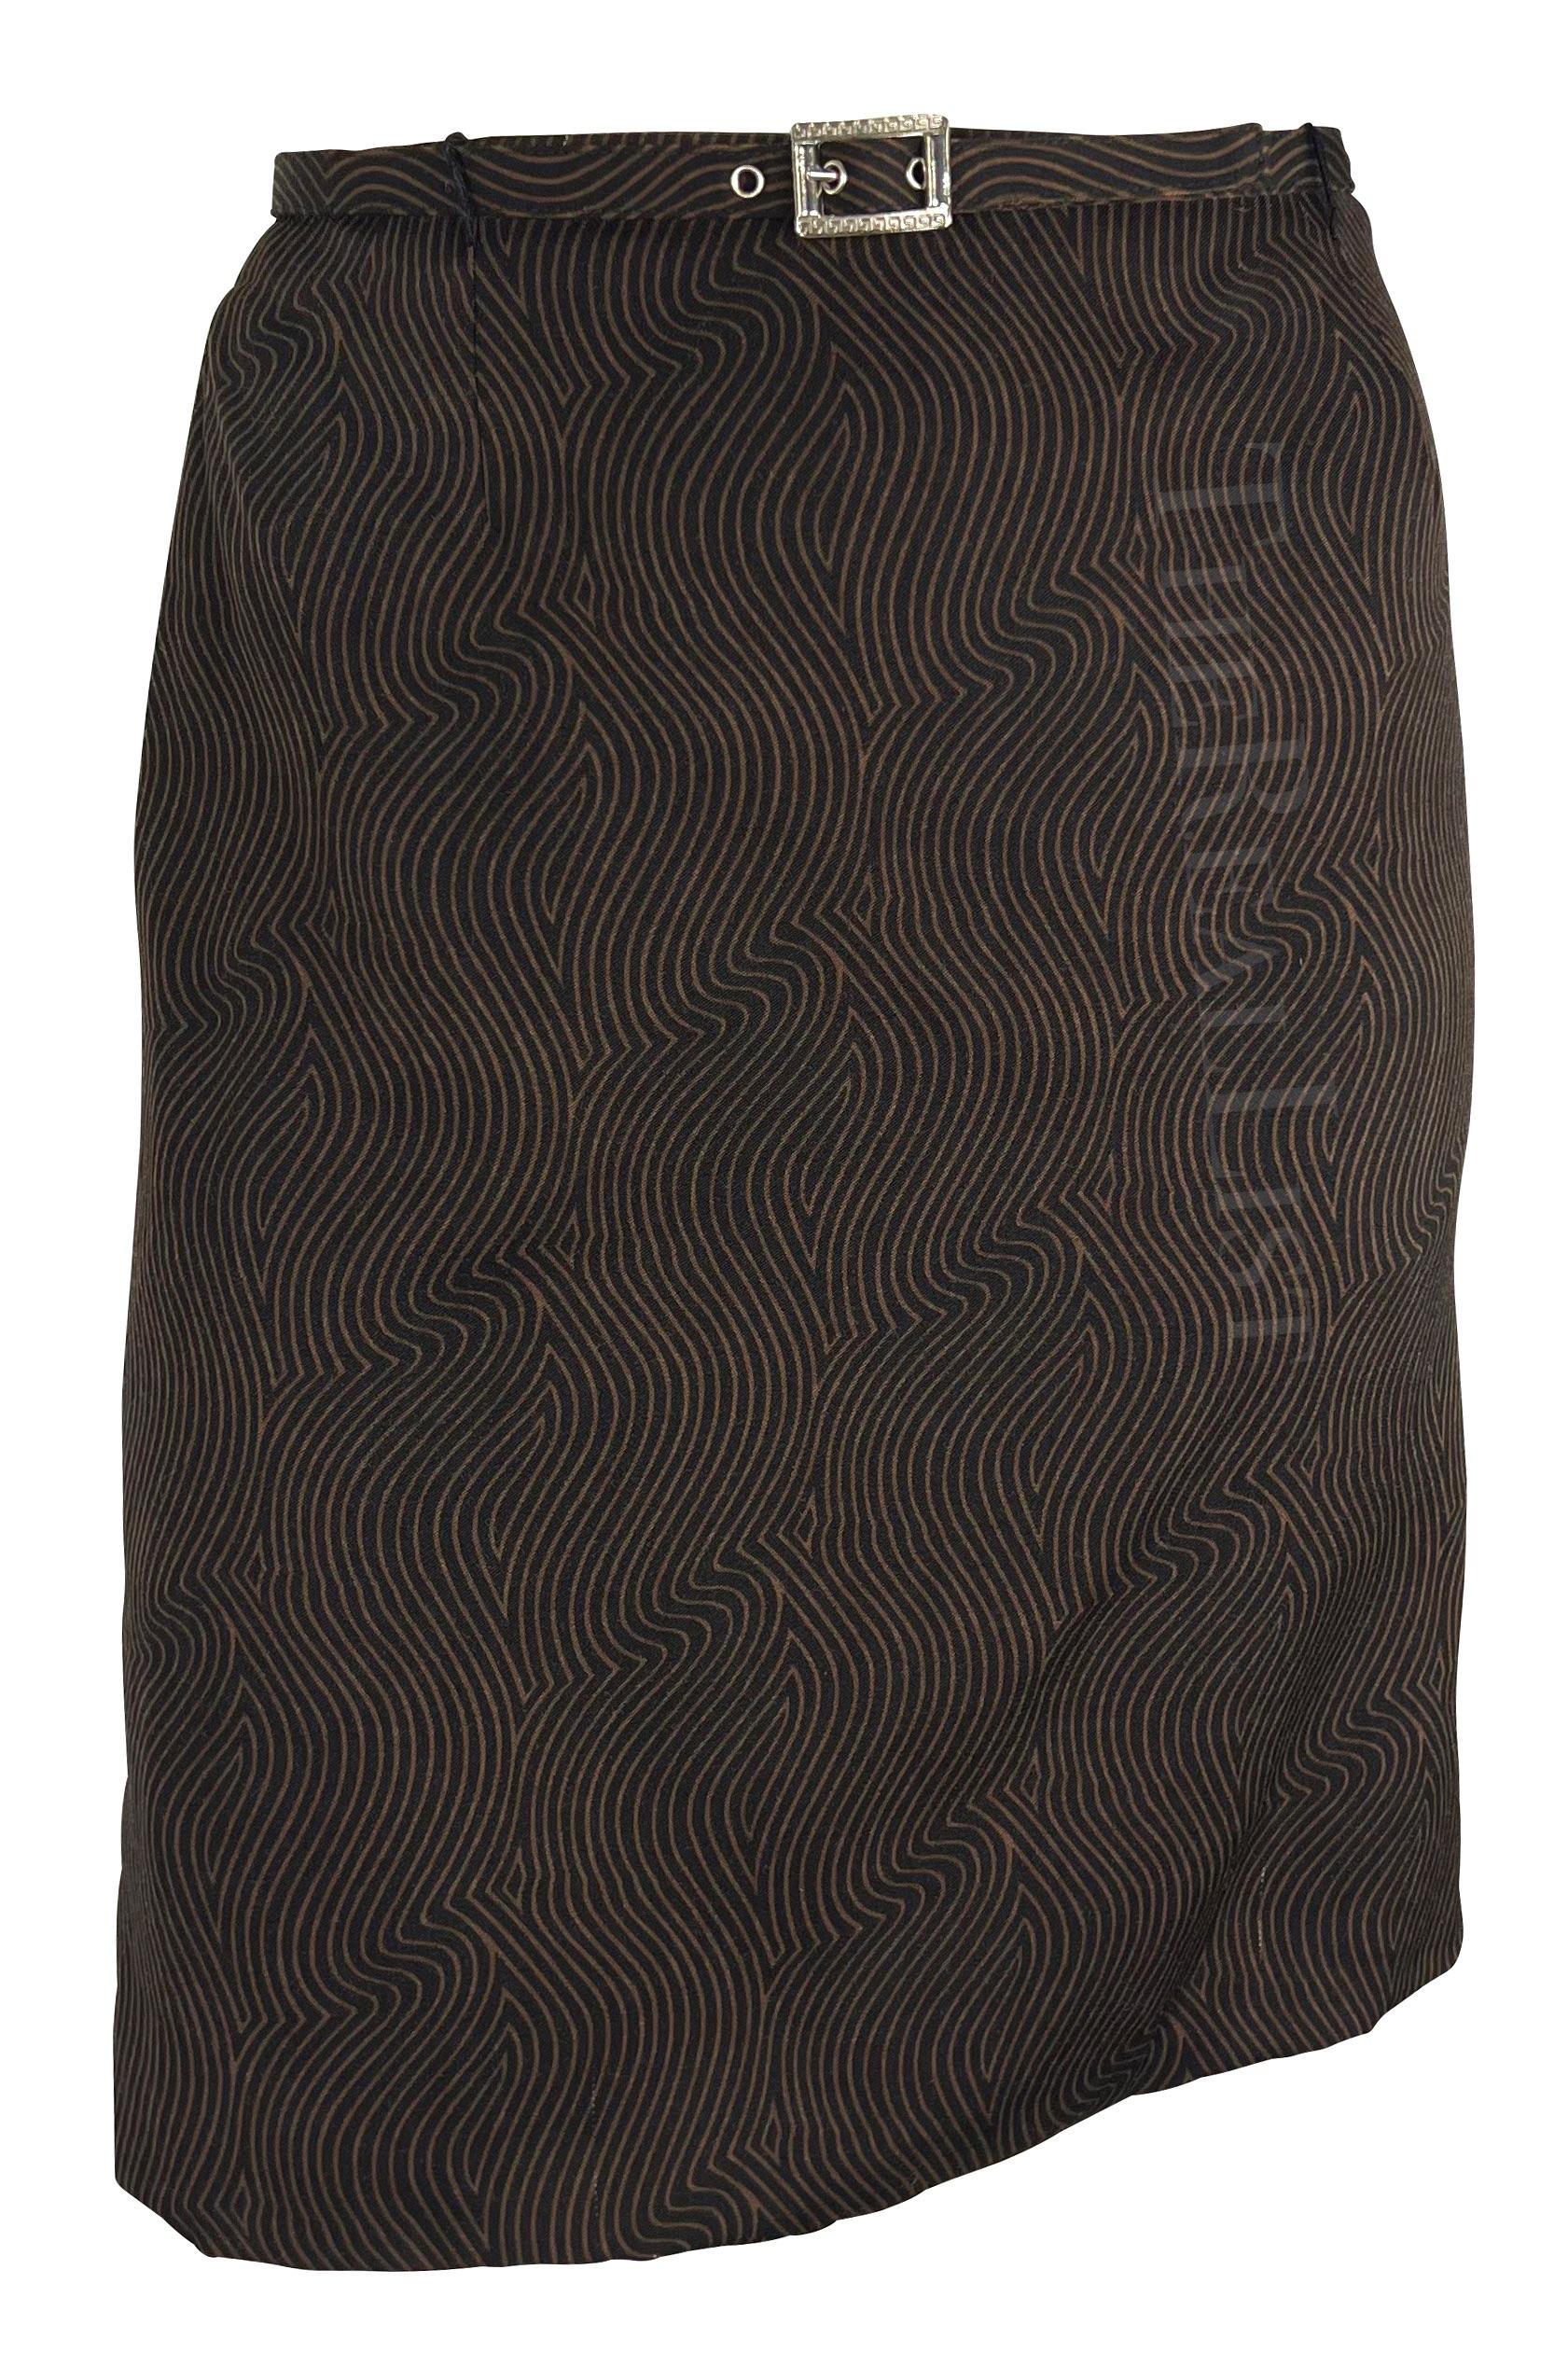 Wir präsentieren einen fabelhaften braunen Gianni Versace Rockanzug, entworfen von Gianni Versace. Die Jacke und der dazu passende Rock aus der Herbst/Winter-Kollektion 1996 sind mit einem fesselnden, wellenförmigen, linearen Druck verziert. Die